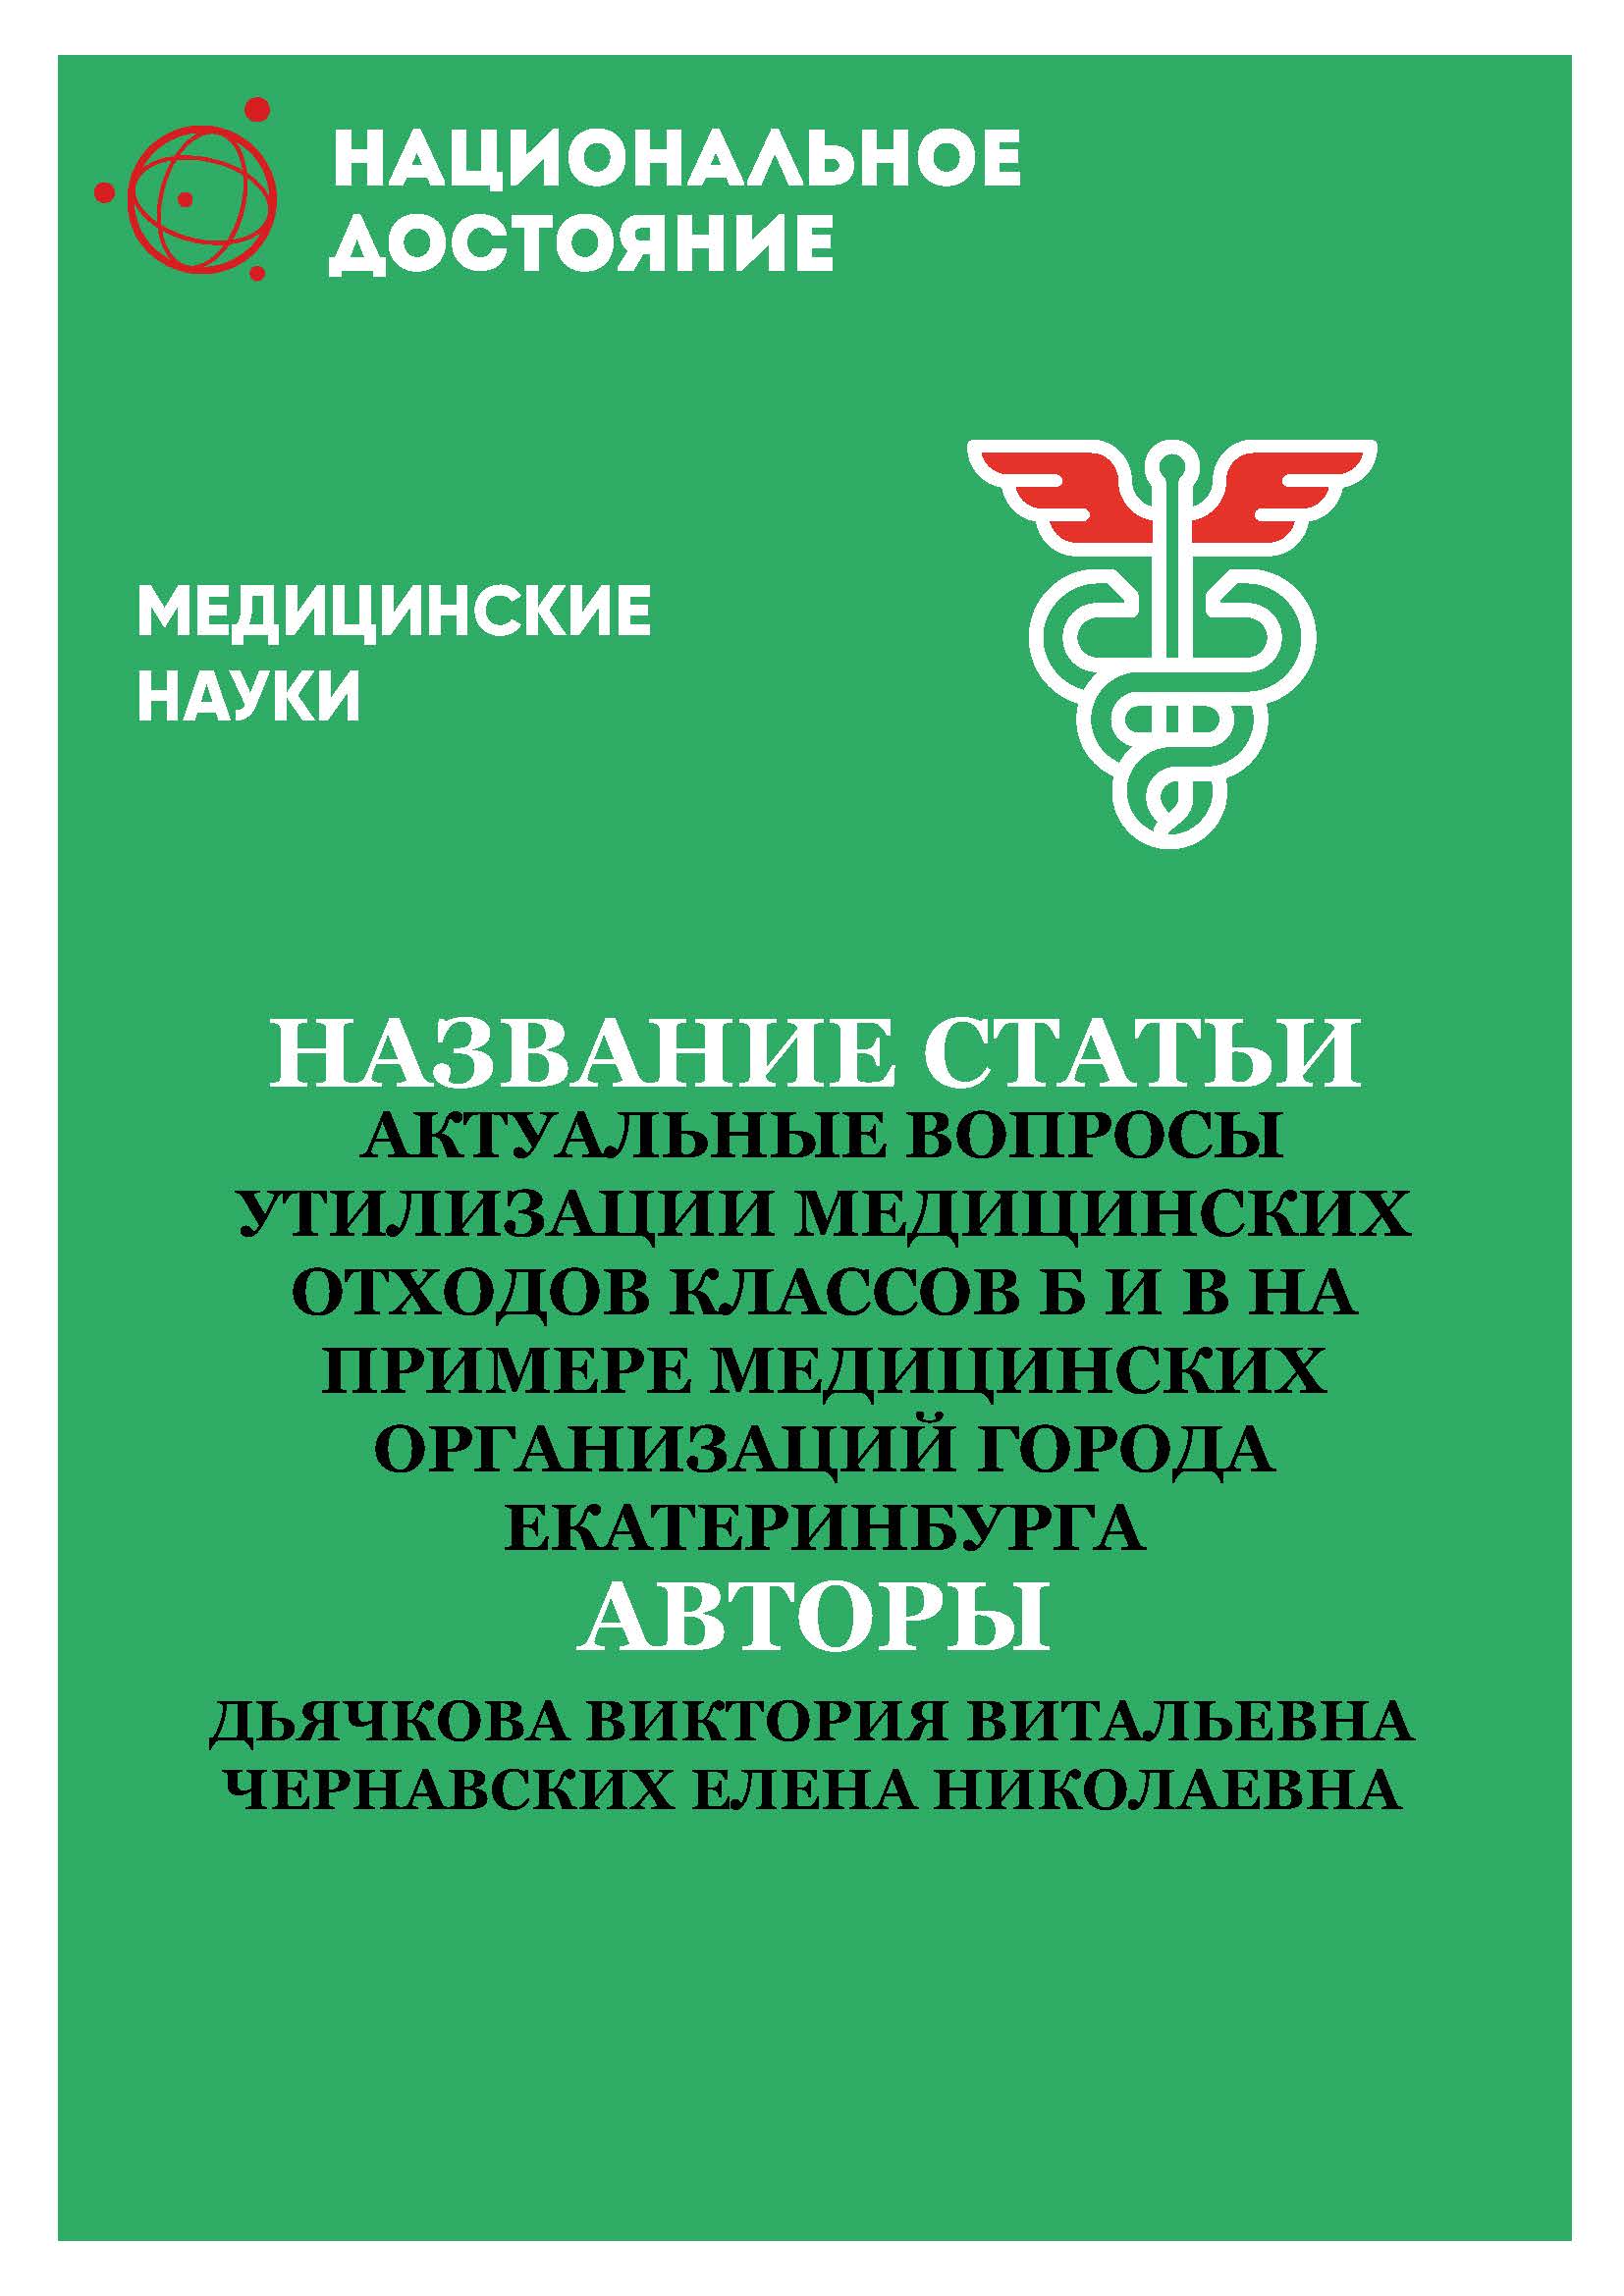 Актуальные вопросы утилизации медицинских отходов классов Б и В на примере медицинских организаций города Екатеринбурга